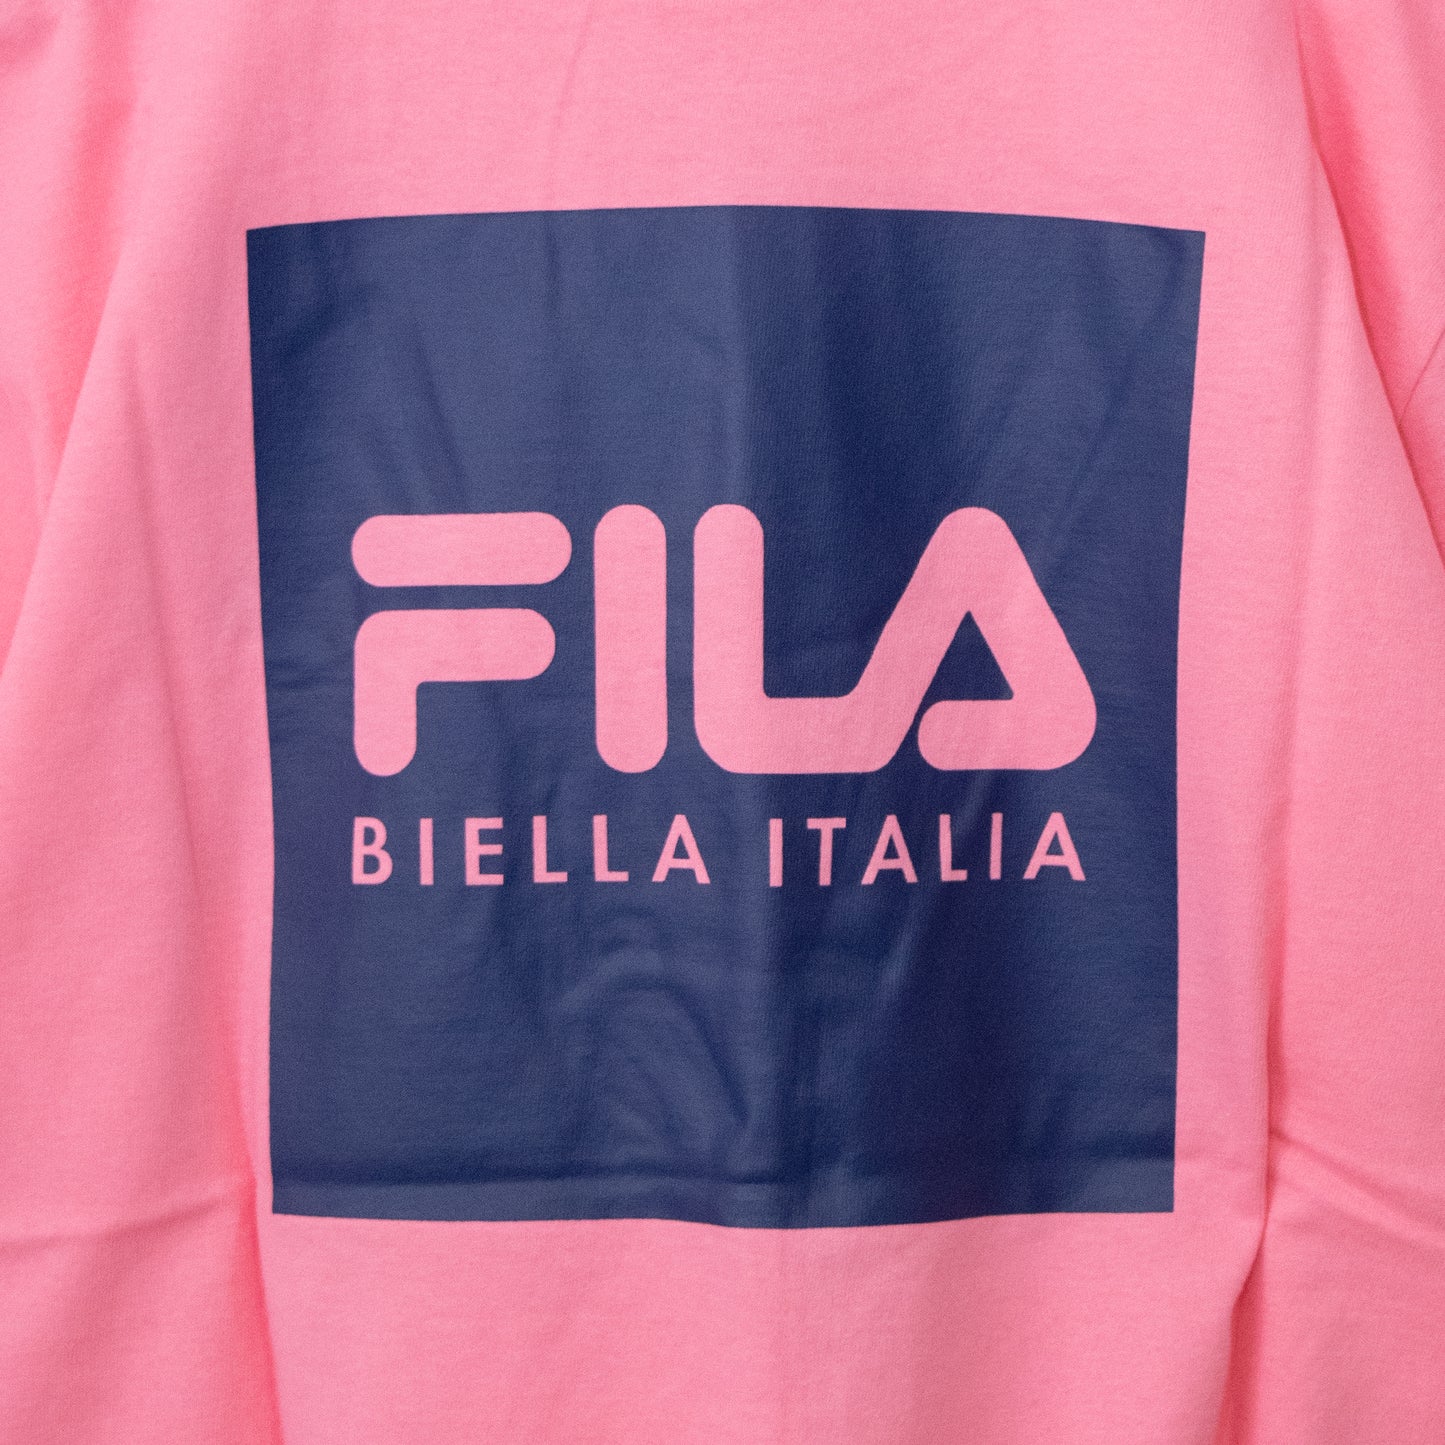 FILA BTS着用モデル Tシャツ PINK